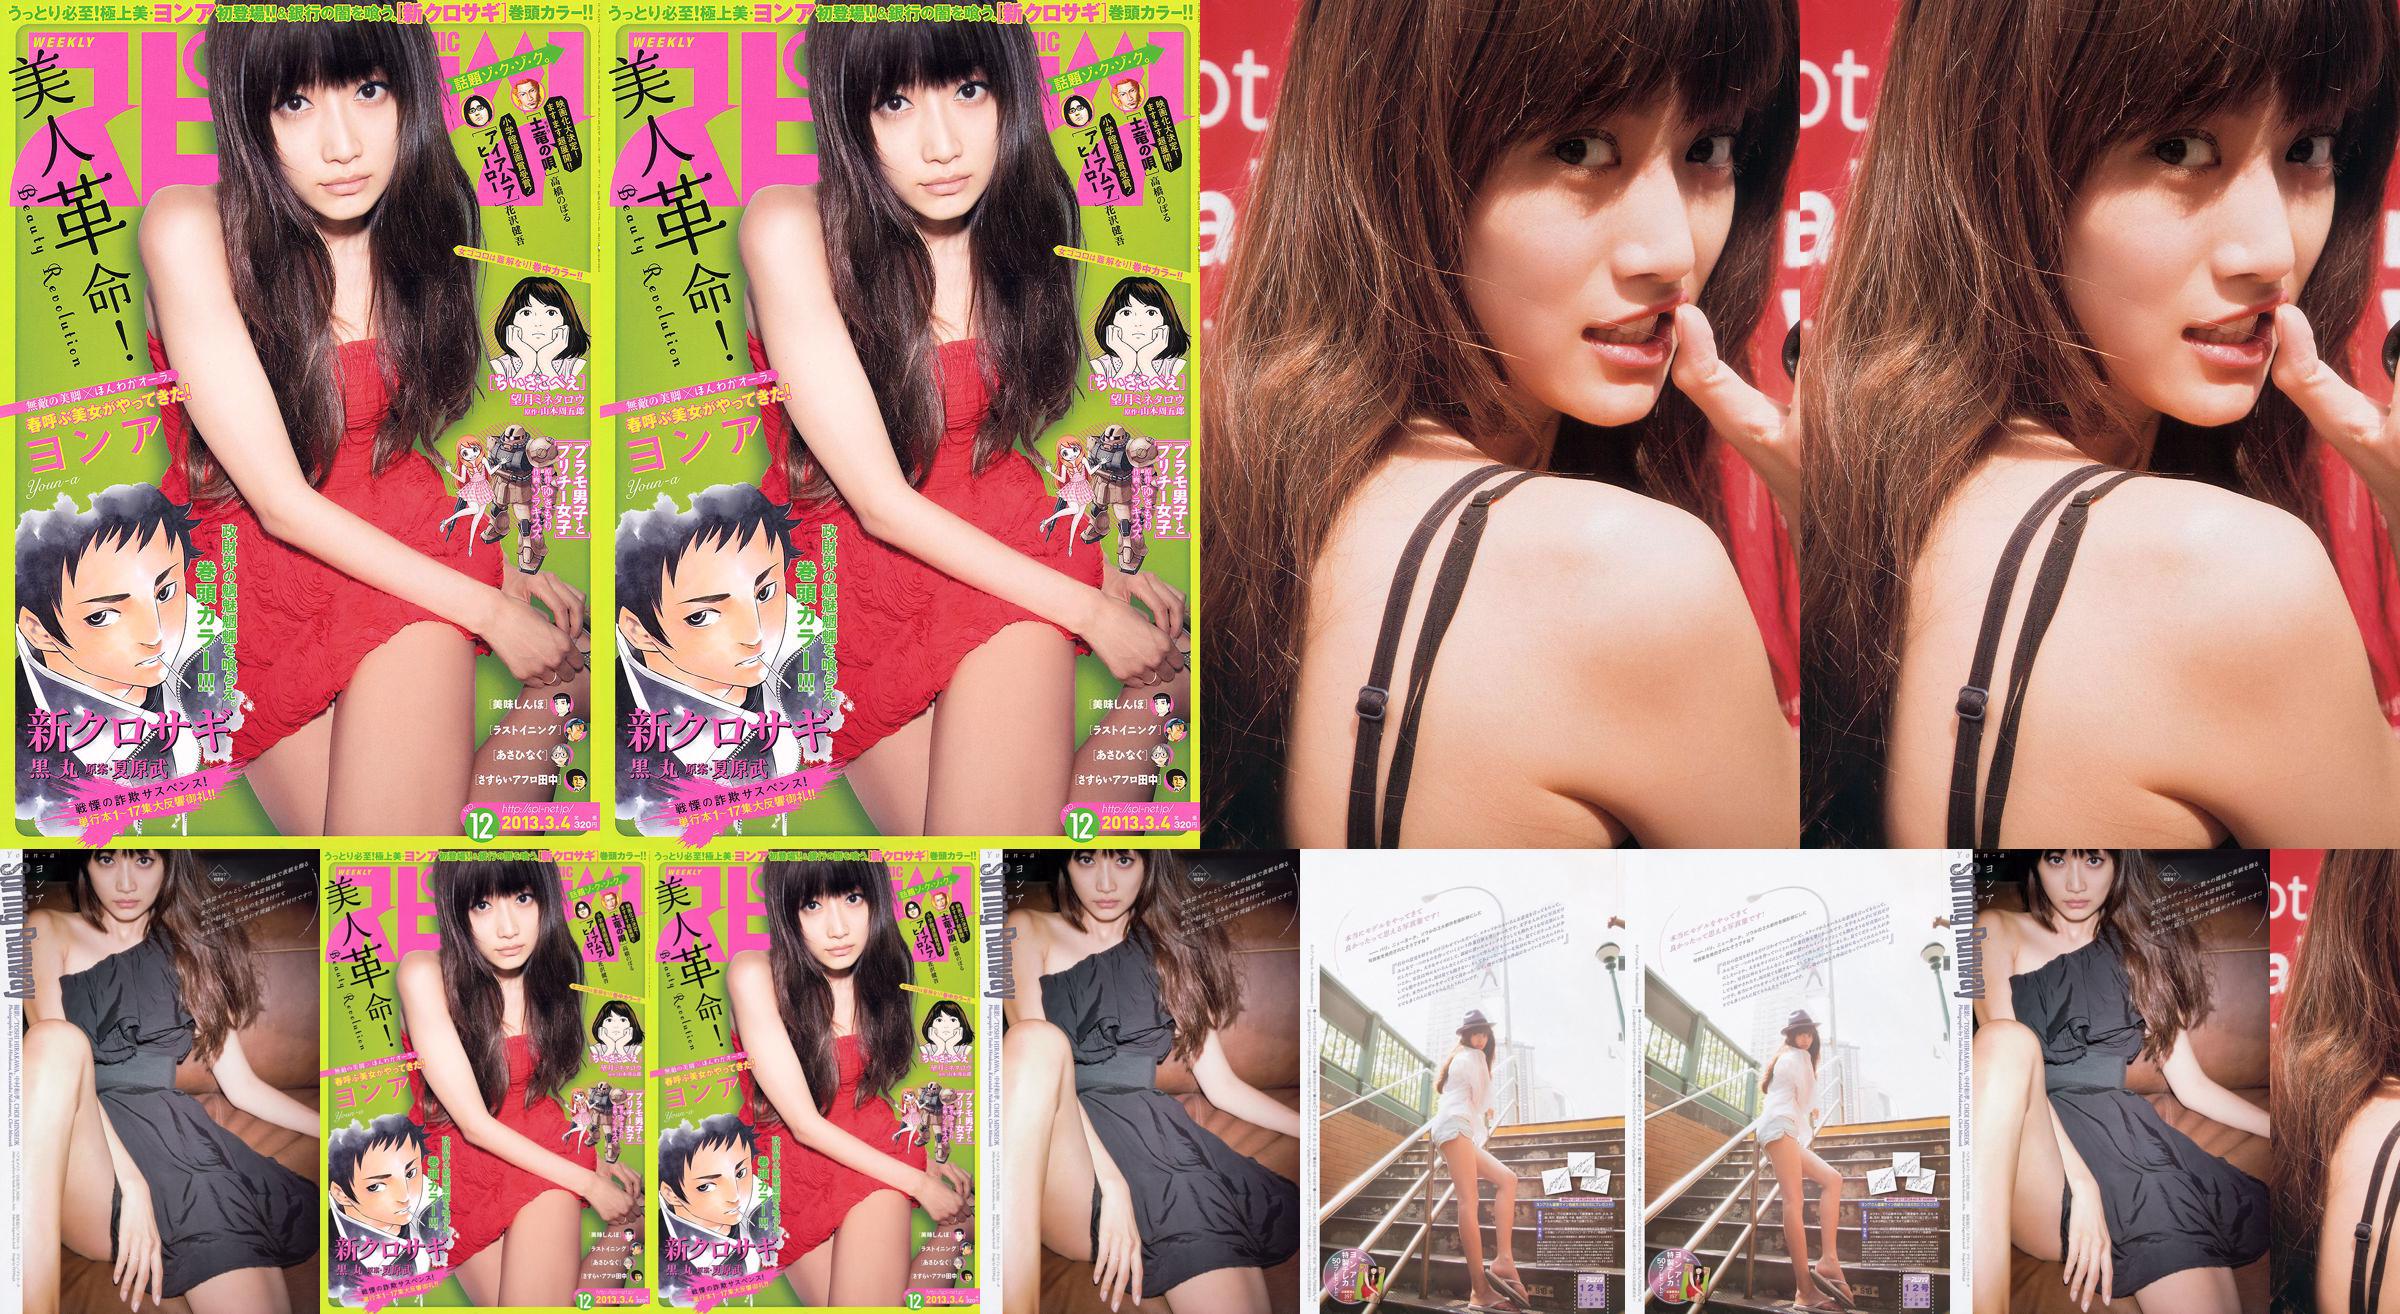 [Wöchentliche Big Comic Spirits] No. ン No. 2013 No.12 Photo Magazine No.8a02bf Seite 1